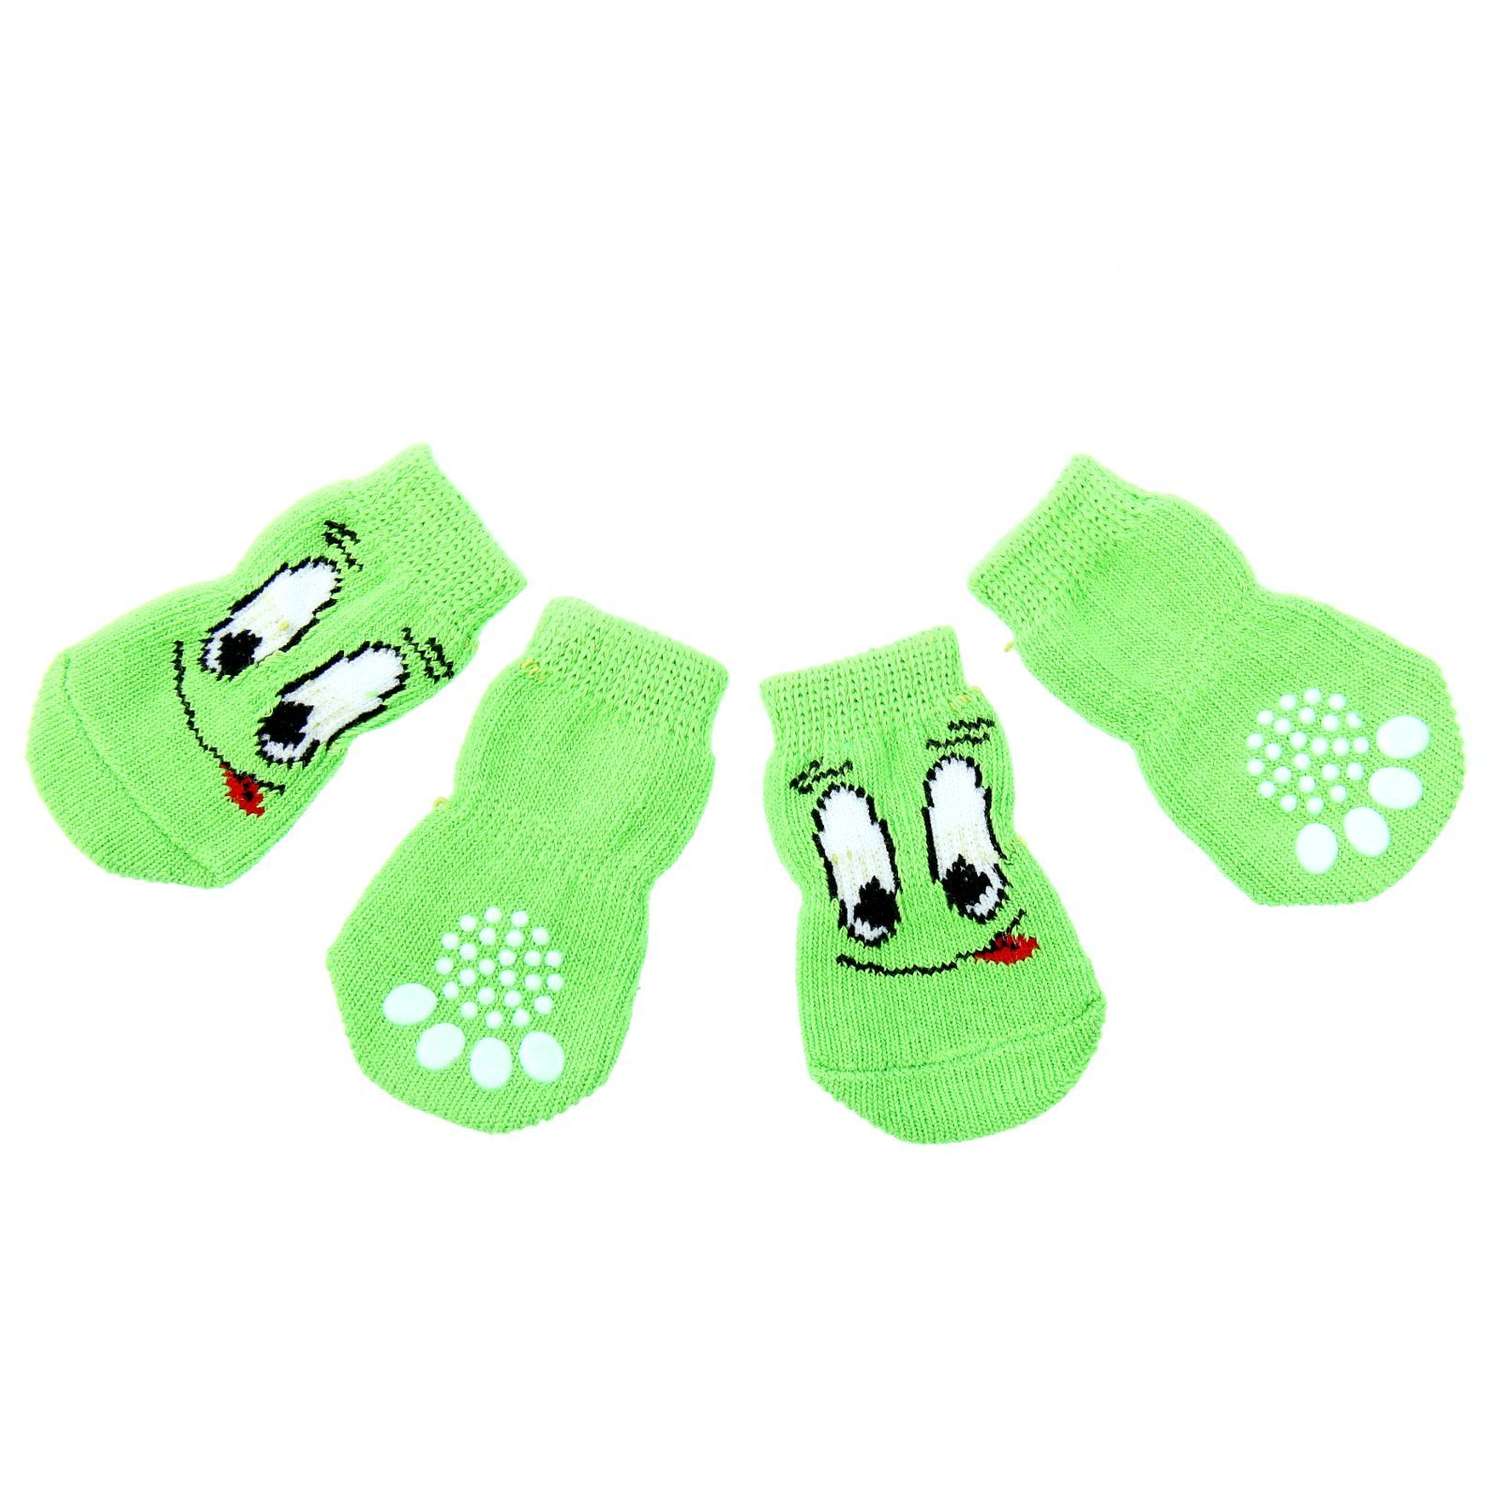 Носки Пижон нескользящие «Улыбка» размер М набор 4 шт. зеленые - фото 1